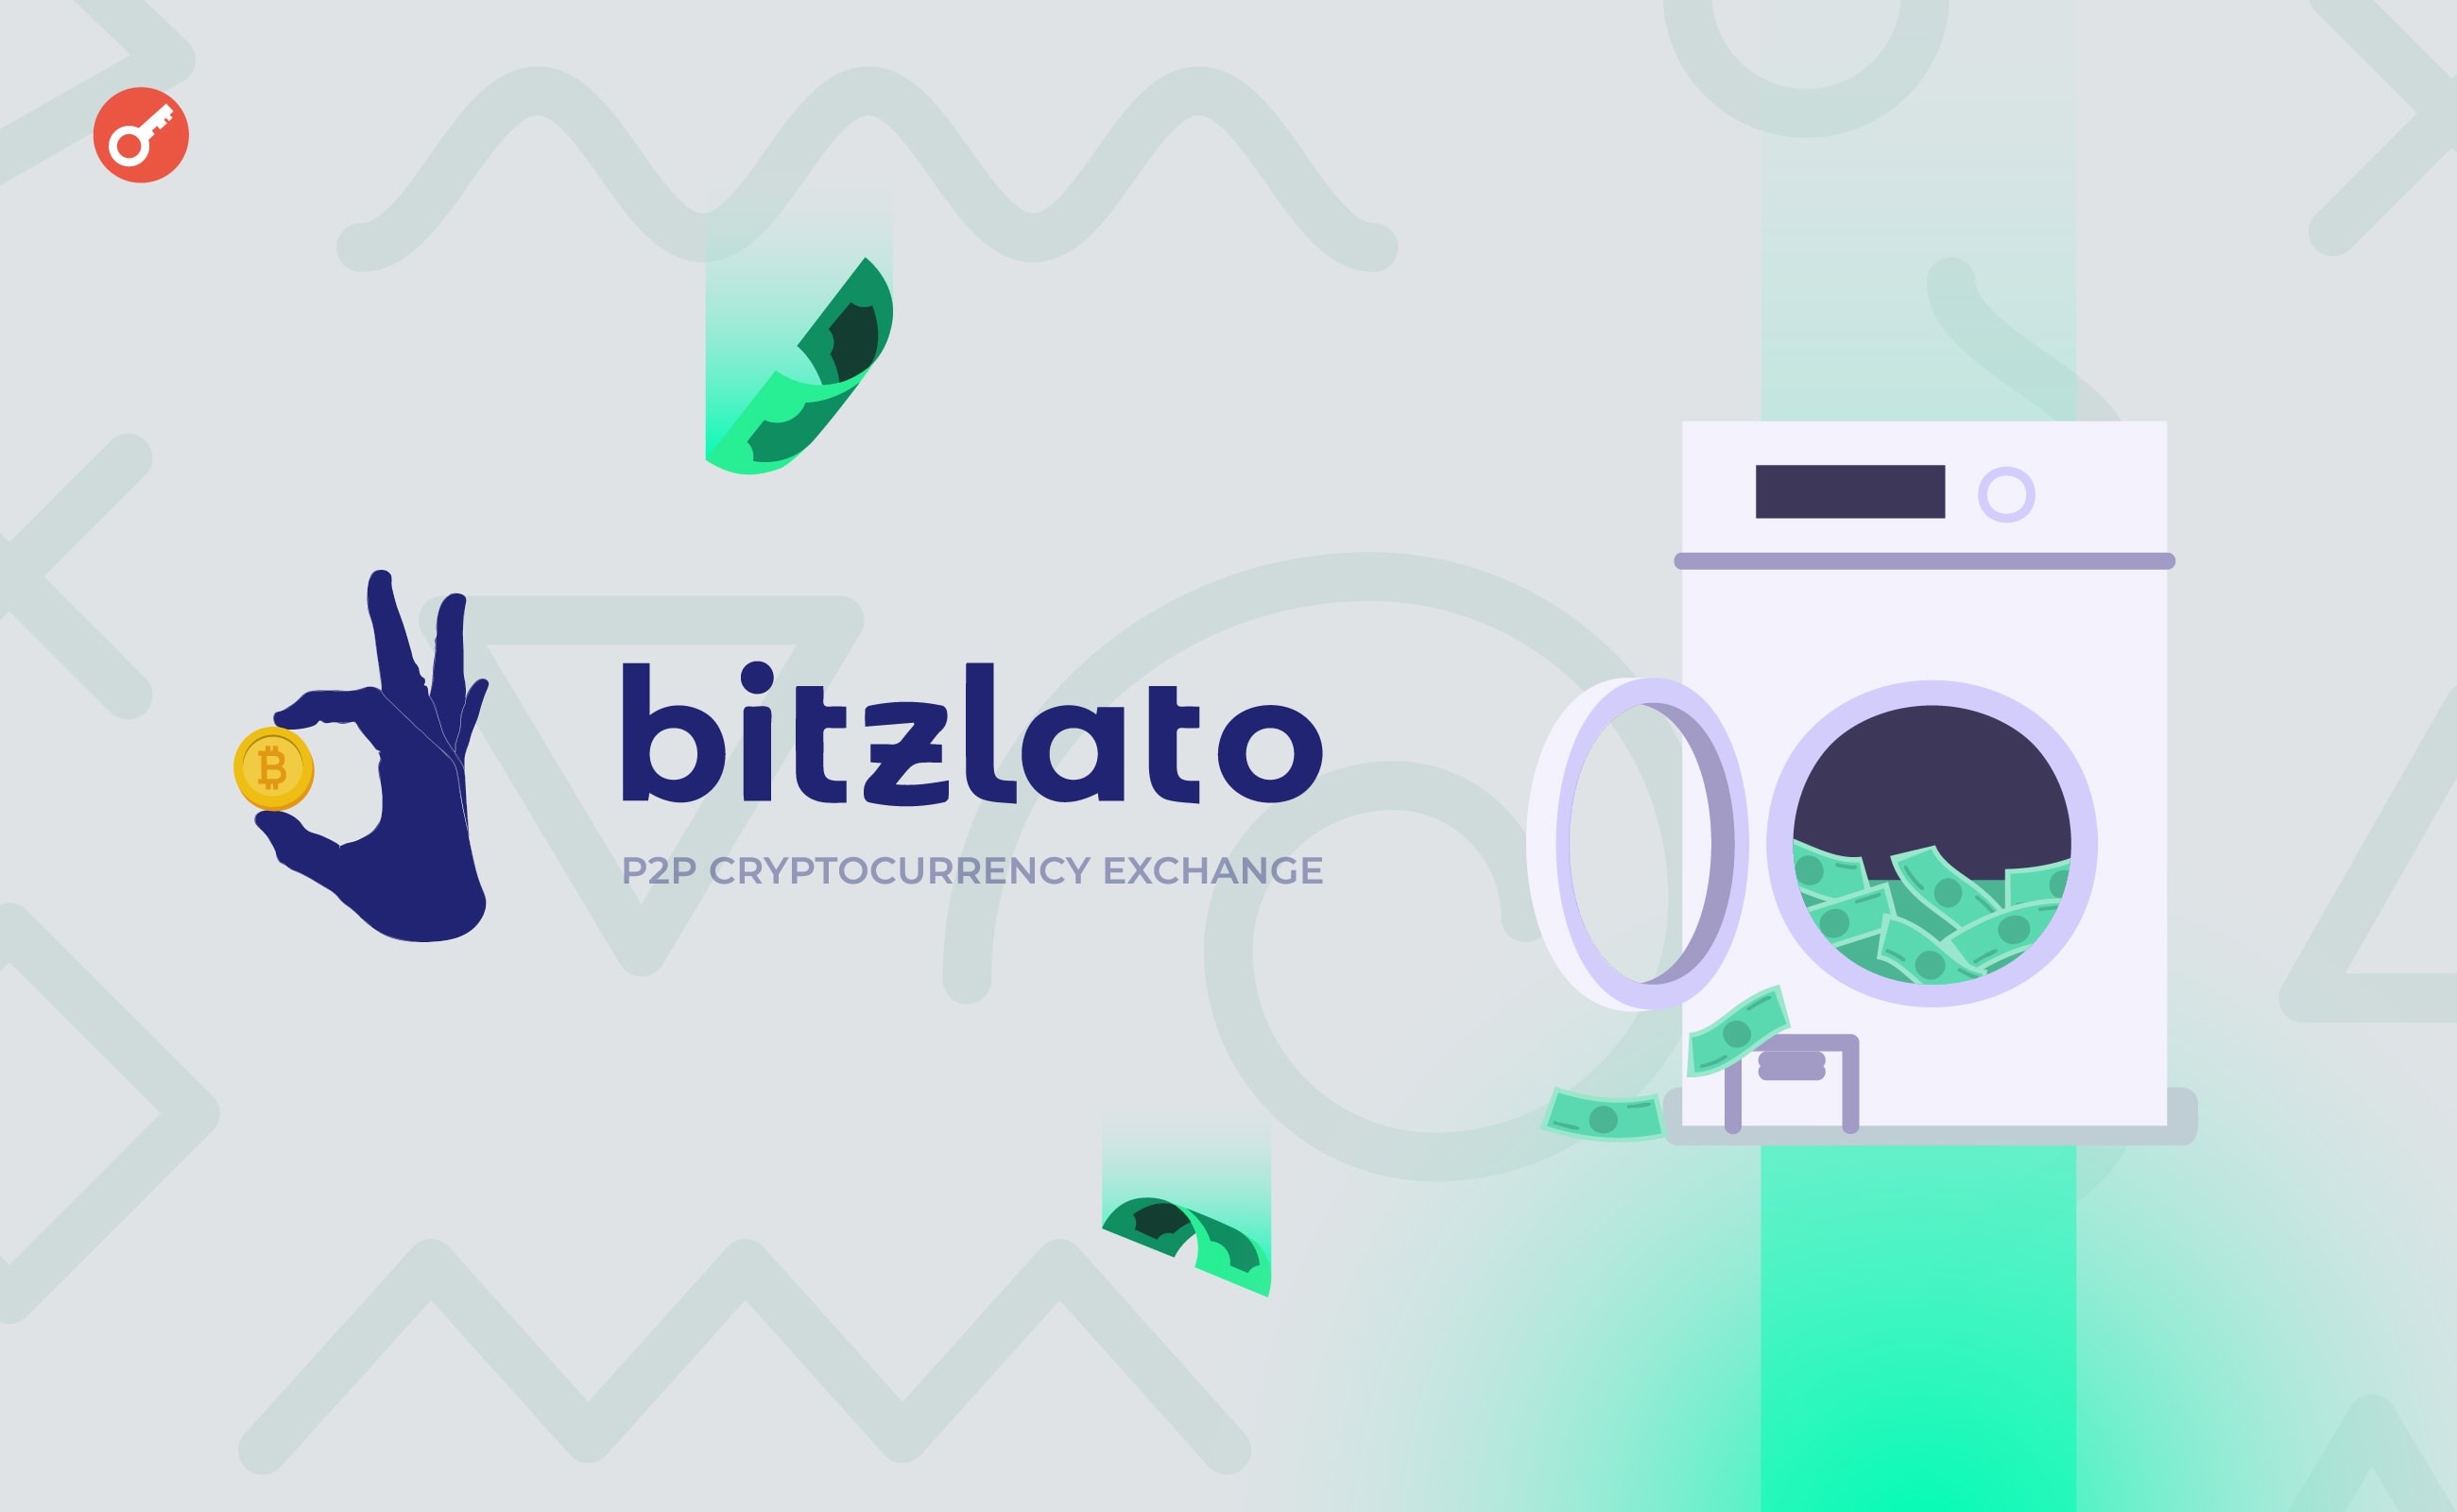 Засновник криптобіржі Bitzlato визнав себе винним у відмиванні коштів. Головний колаж новини.